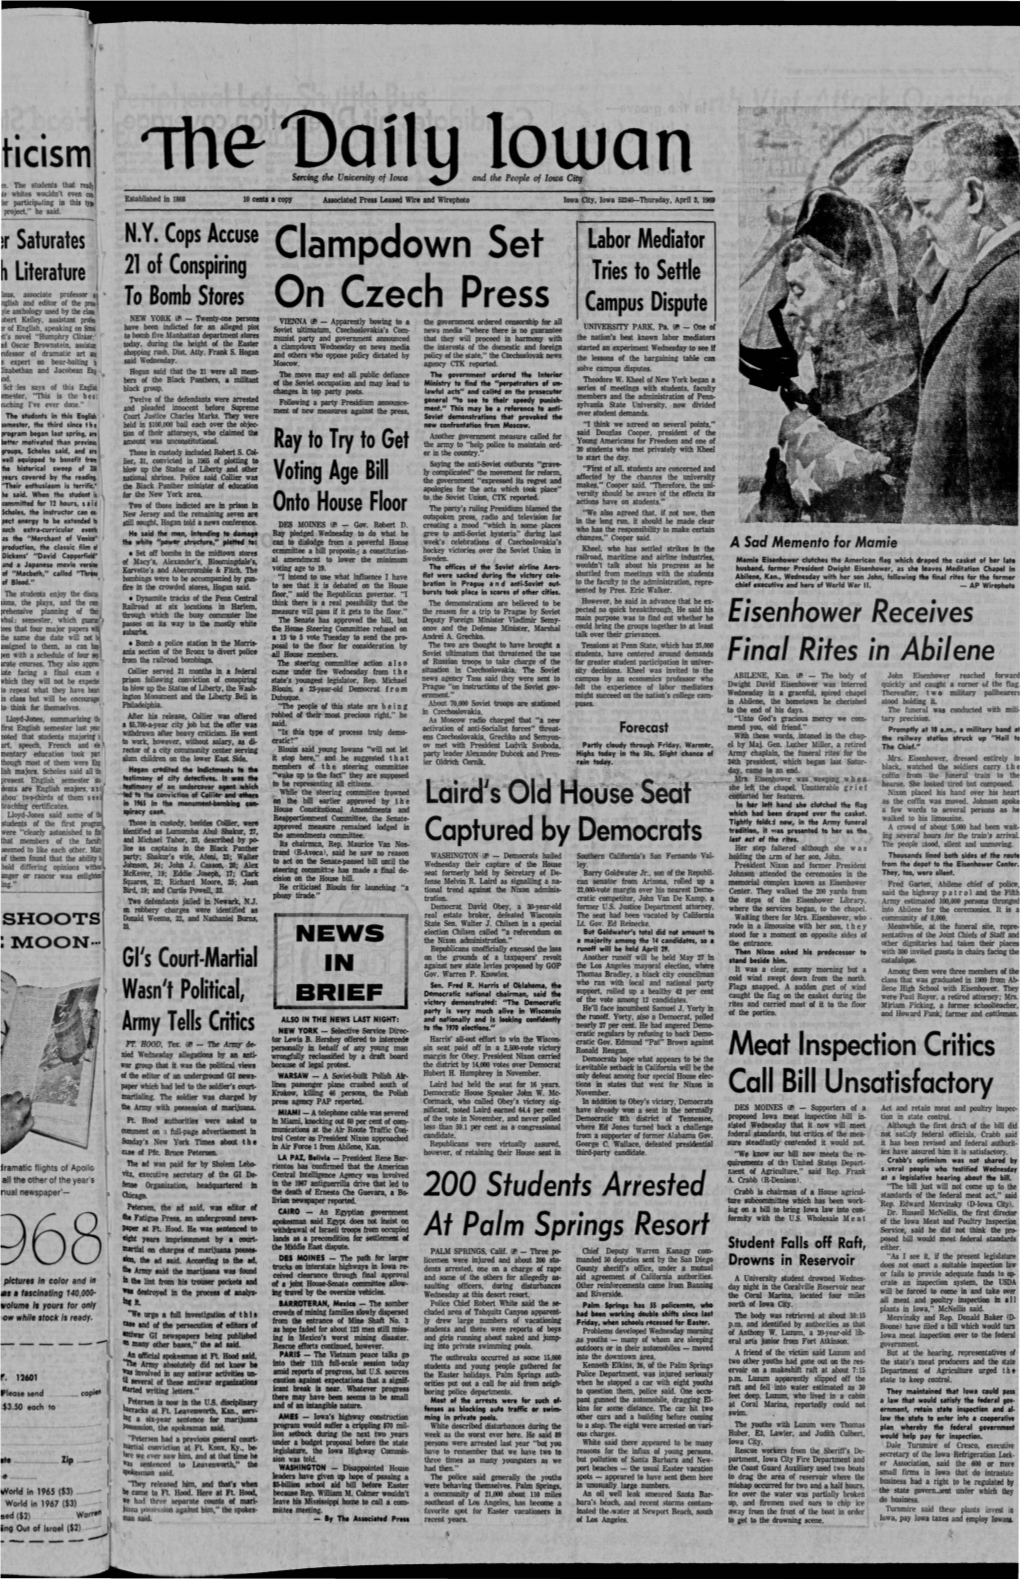 Daily Iowan (Iowa City, Iowa), 1969-04-03